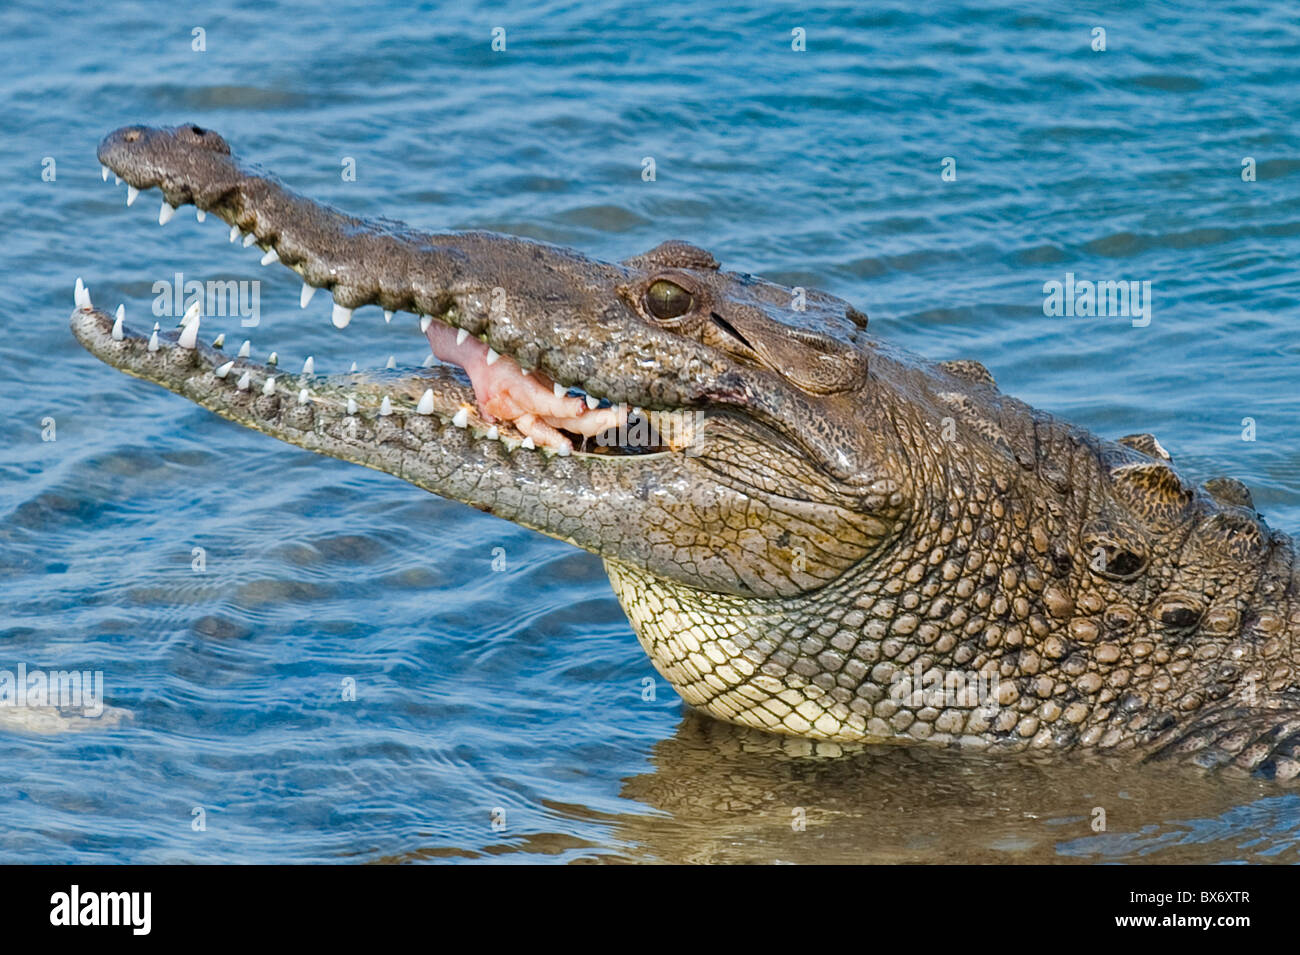 El cocodrilo de agua salada en el Parque Punta Sur, Isla de Cozumel (Cozumel), Isla de Cozumel, frente a la Península de Yucatán, Quintana Roo, México. Foto de stock